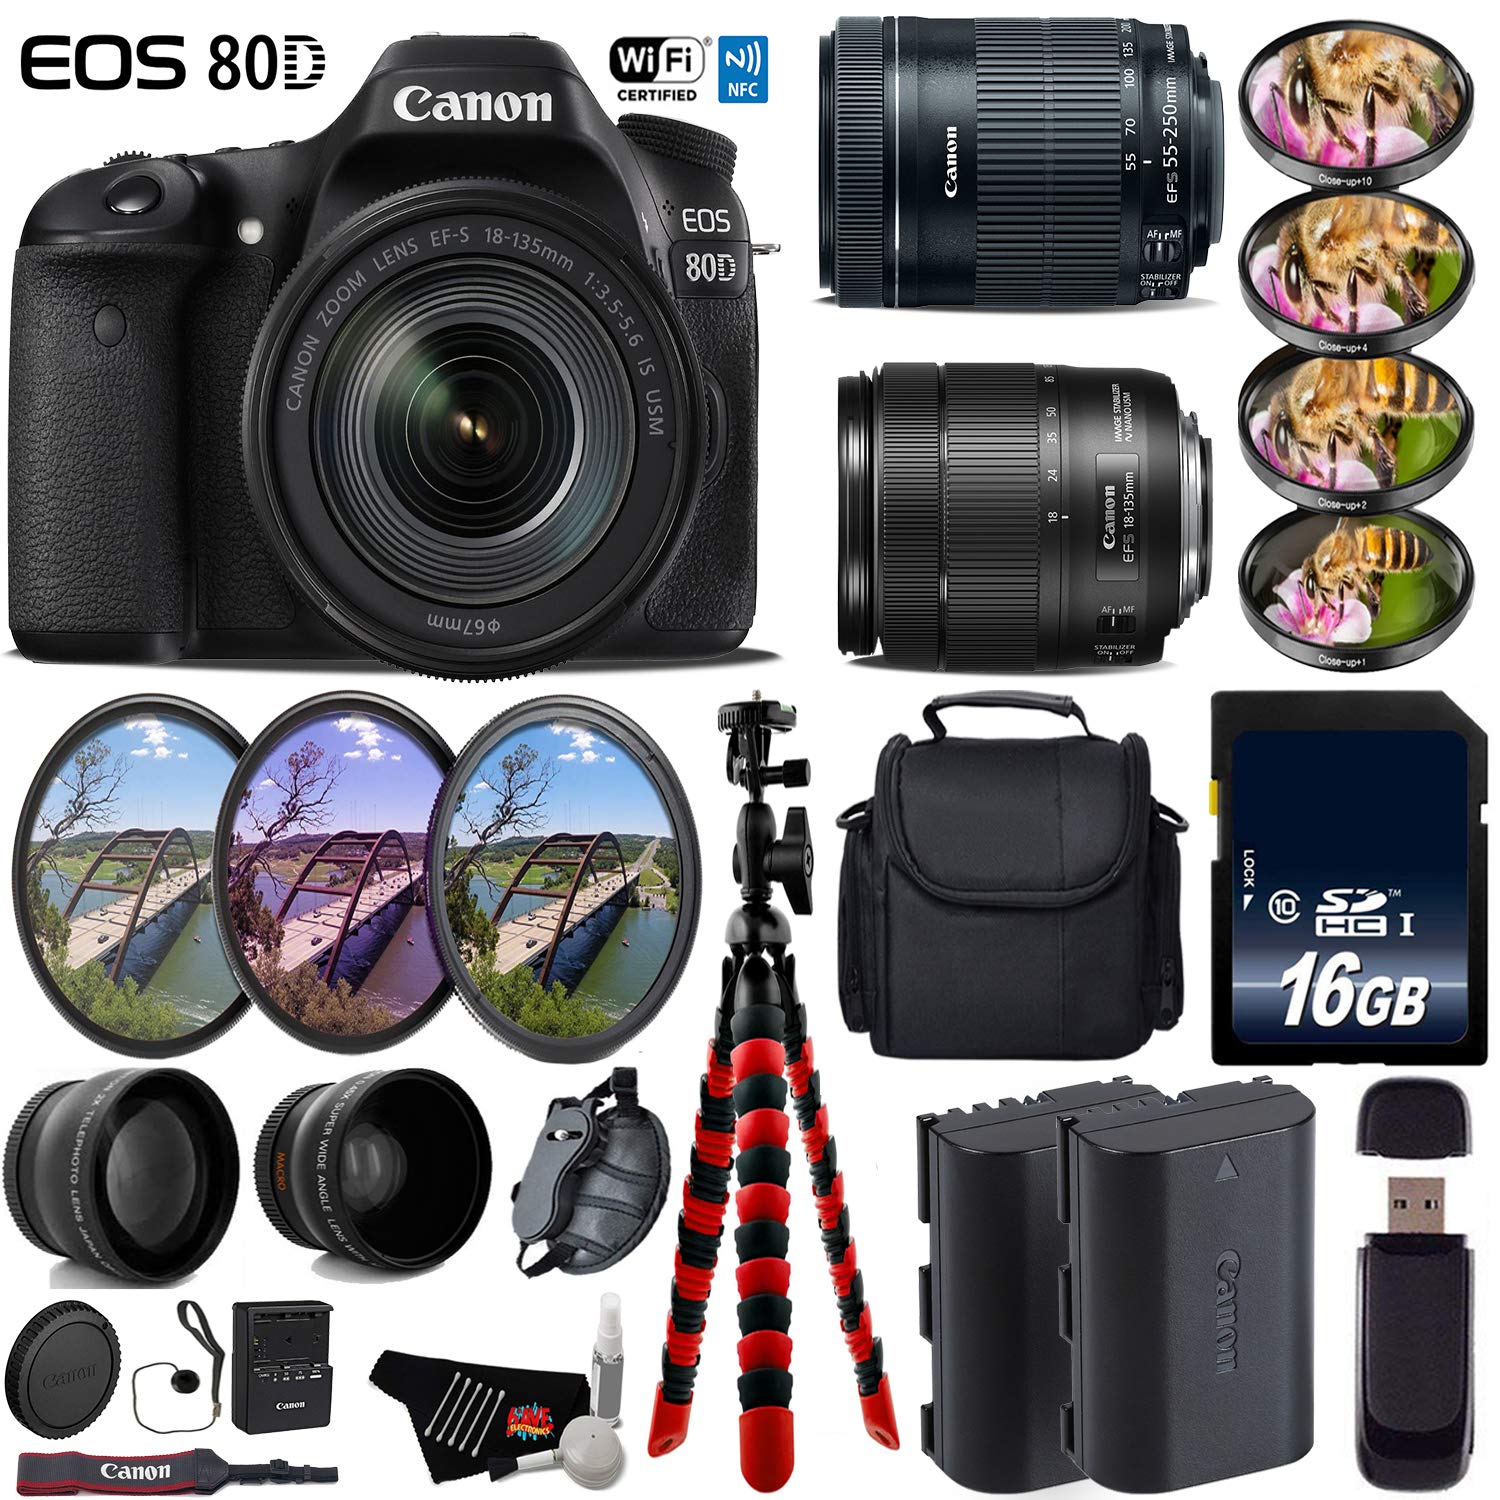 Canon EOS 80D DSLR Camera + 18-135mm STM Lens & 55-250mm is STM Lens + UV FLD CPL Filter Kit + 4 PC Macro Kit Deluxe Bundle